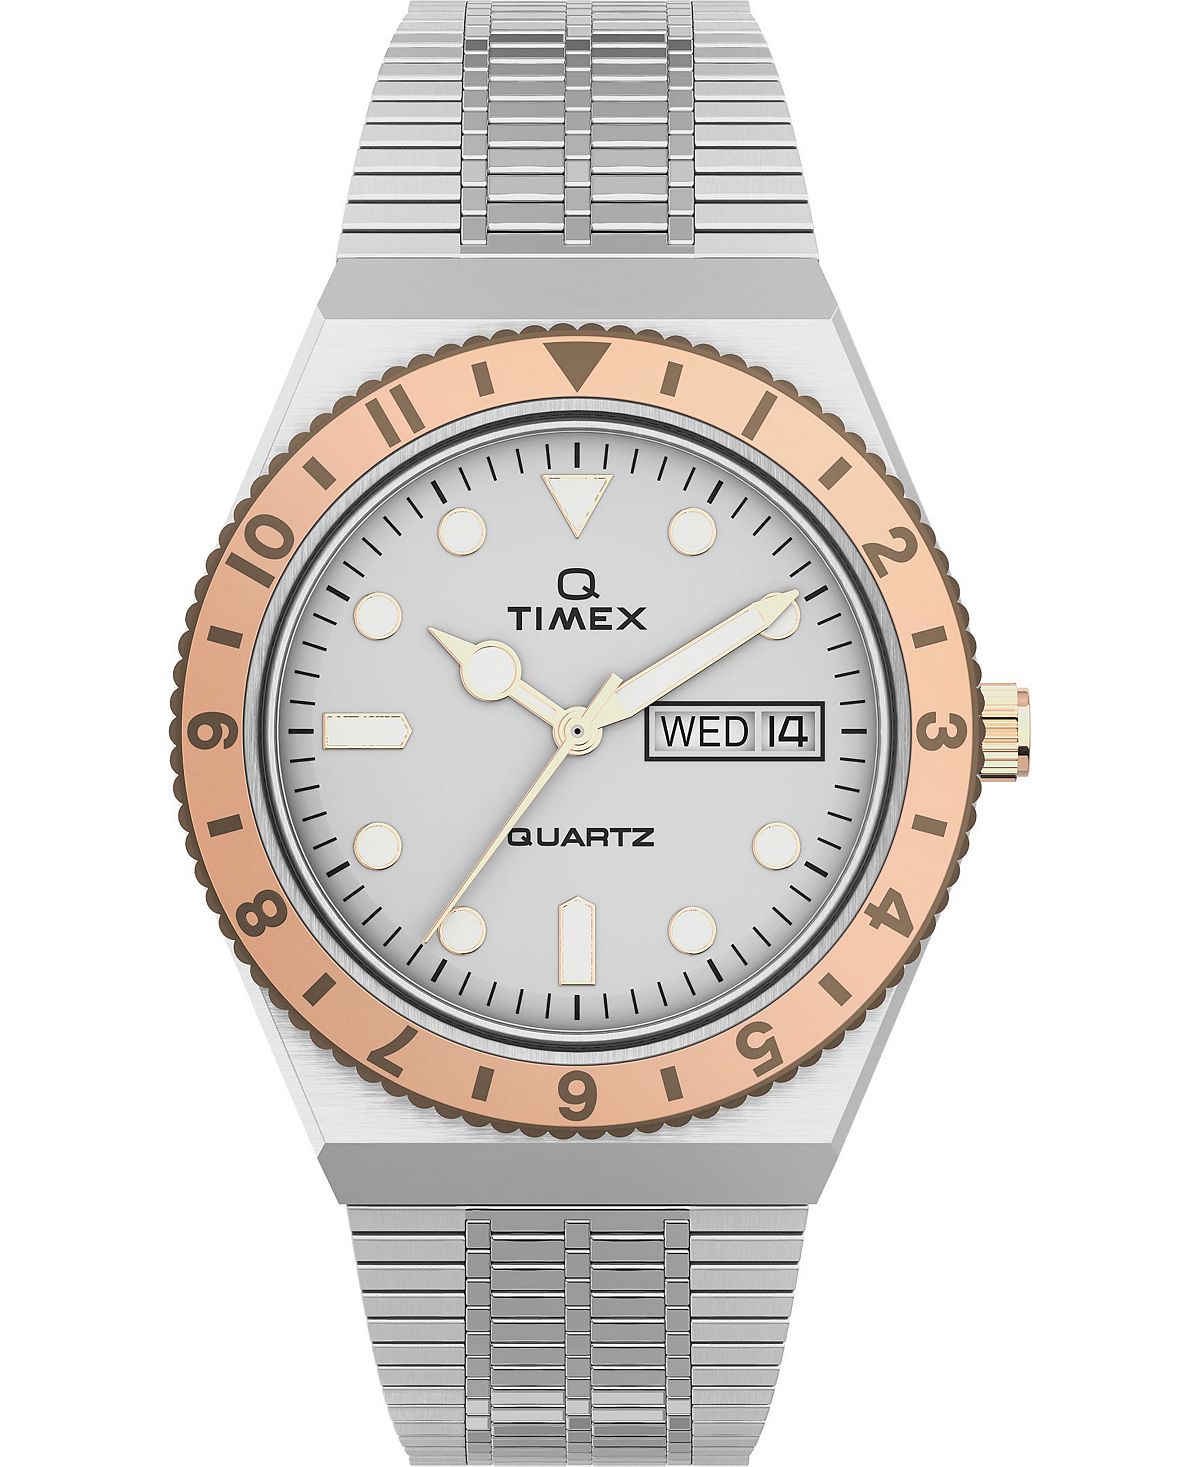 Женские часы Q серебристого цвета с браслетом из нержавеющей стали, 36 мм Timex женские часы cristal из нержавеющей стали серебристого цвета 28 мм jbw